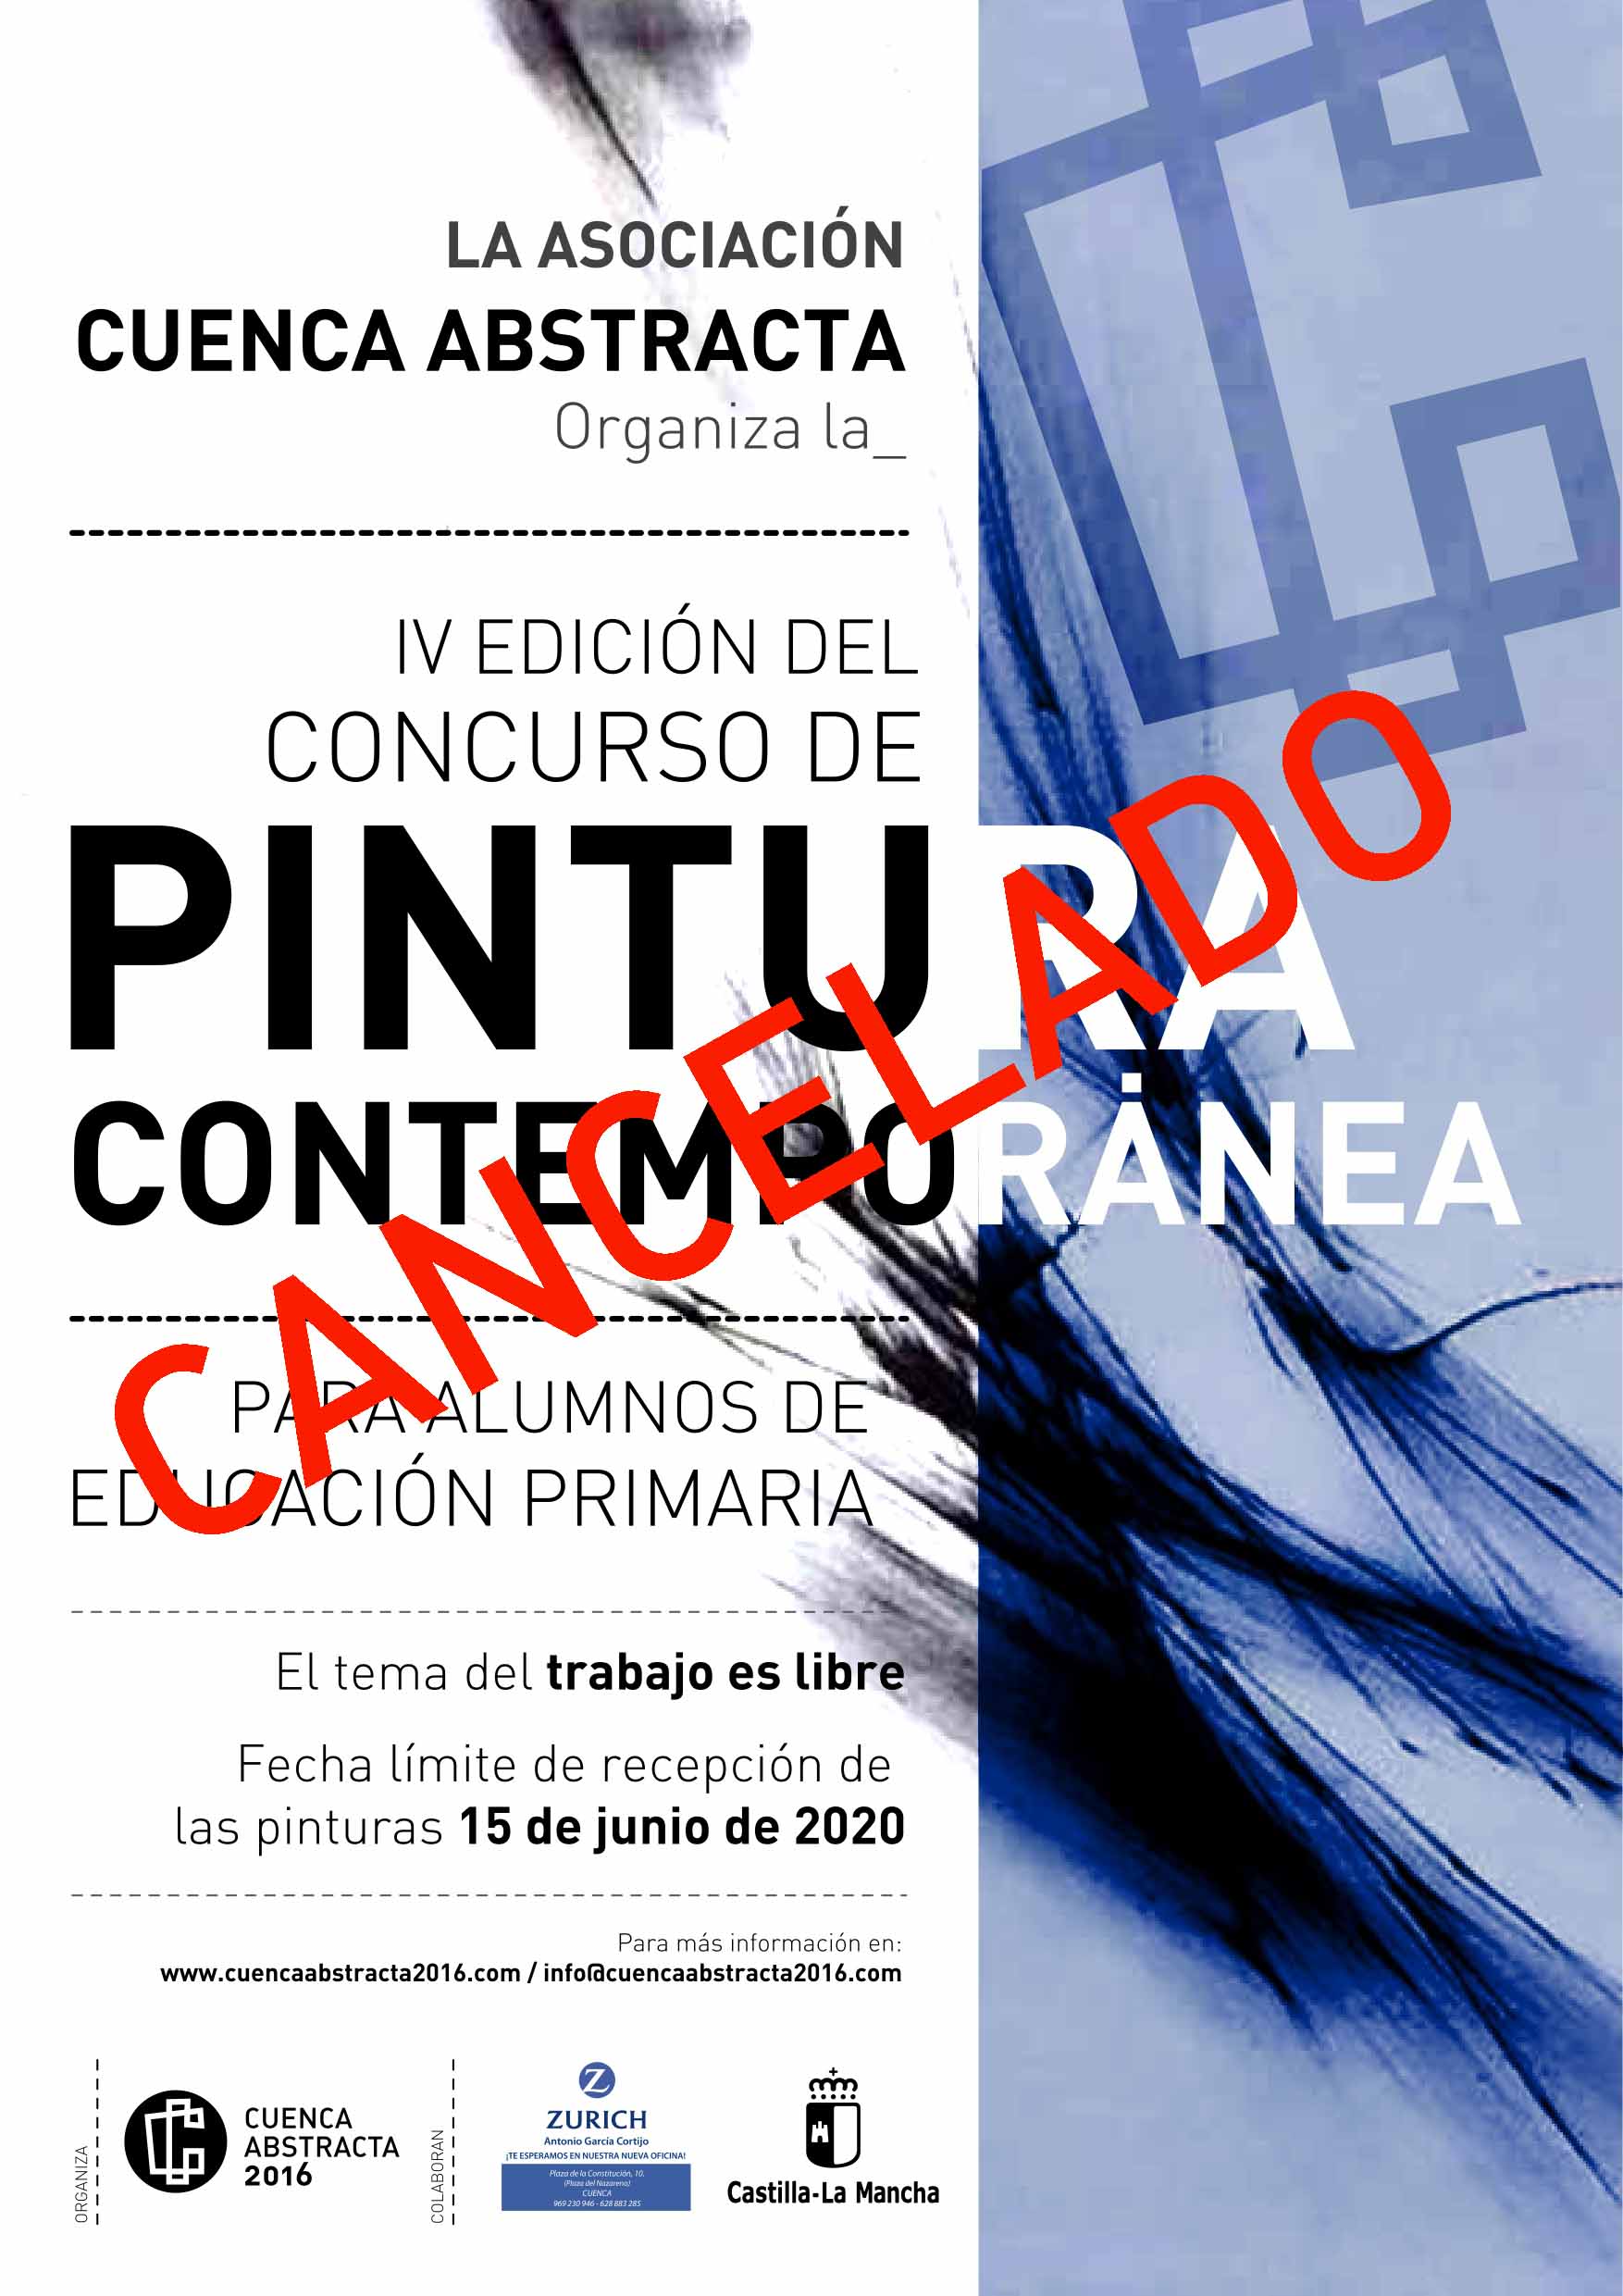 Cancelado el IV Concurso de Pintura Contemporánea "Cuenca Abstracta"